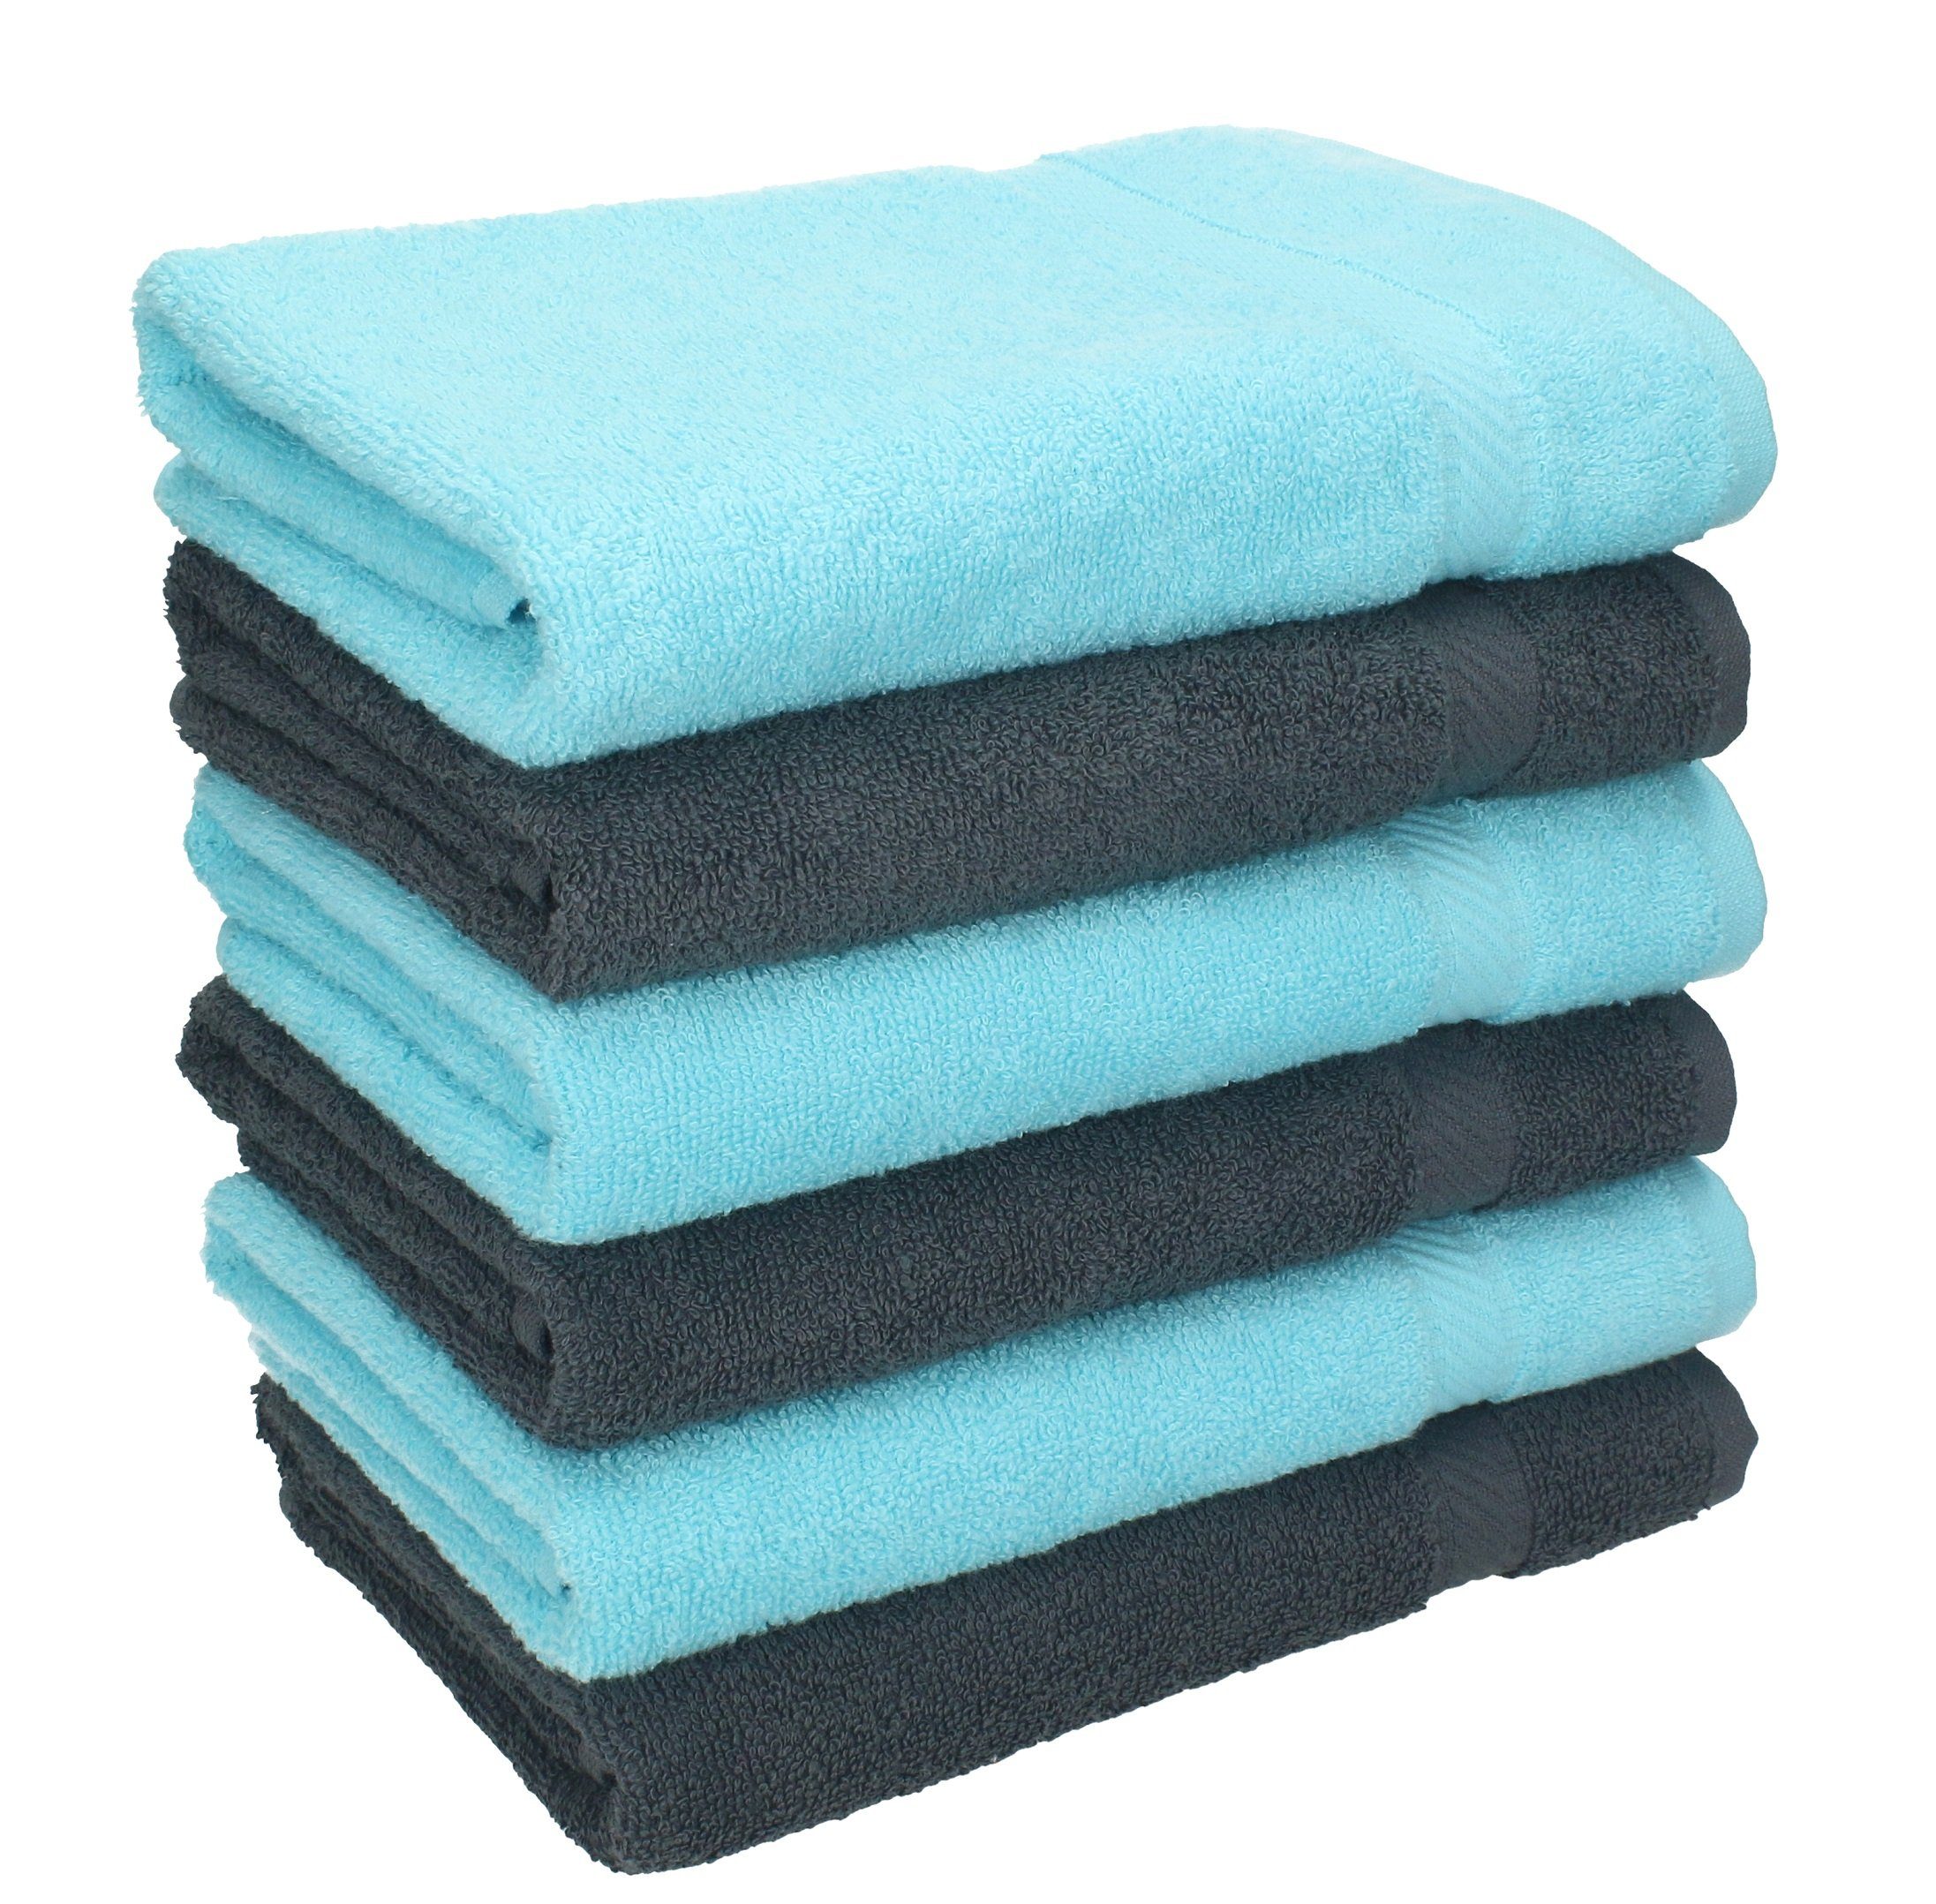 Betz Handtücher 6 Stück Set anthrazit türkis, Farbe 50 x und 100% Handtücher Handtuch cm 100 Baumwolle 100% Größe Baumwolle Palermo